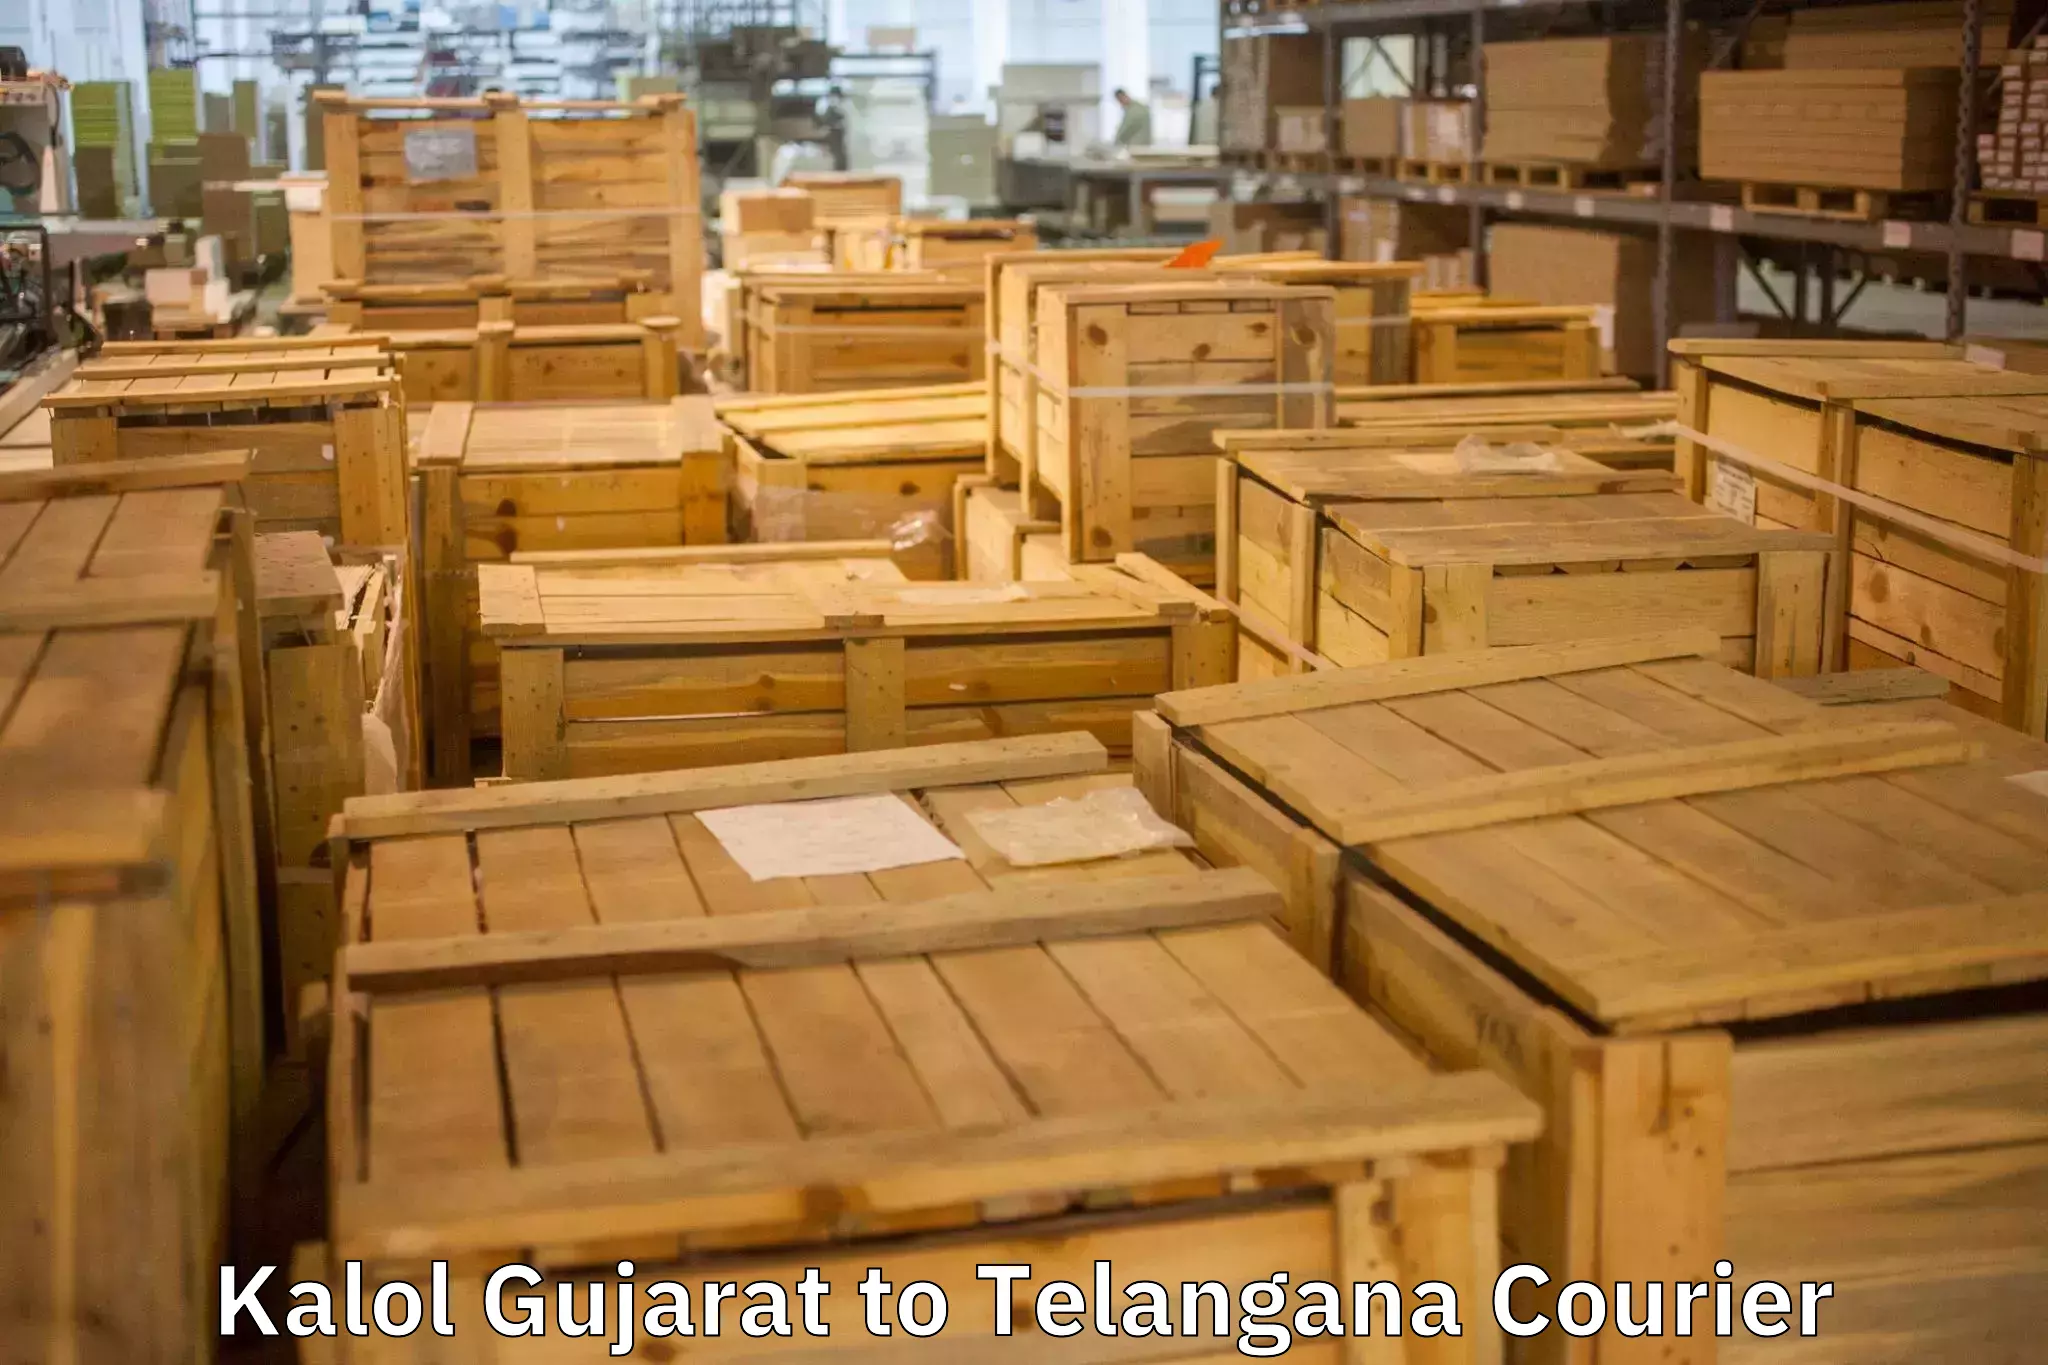 Home shifting experts in Kalol Gujarat to Telangana